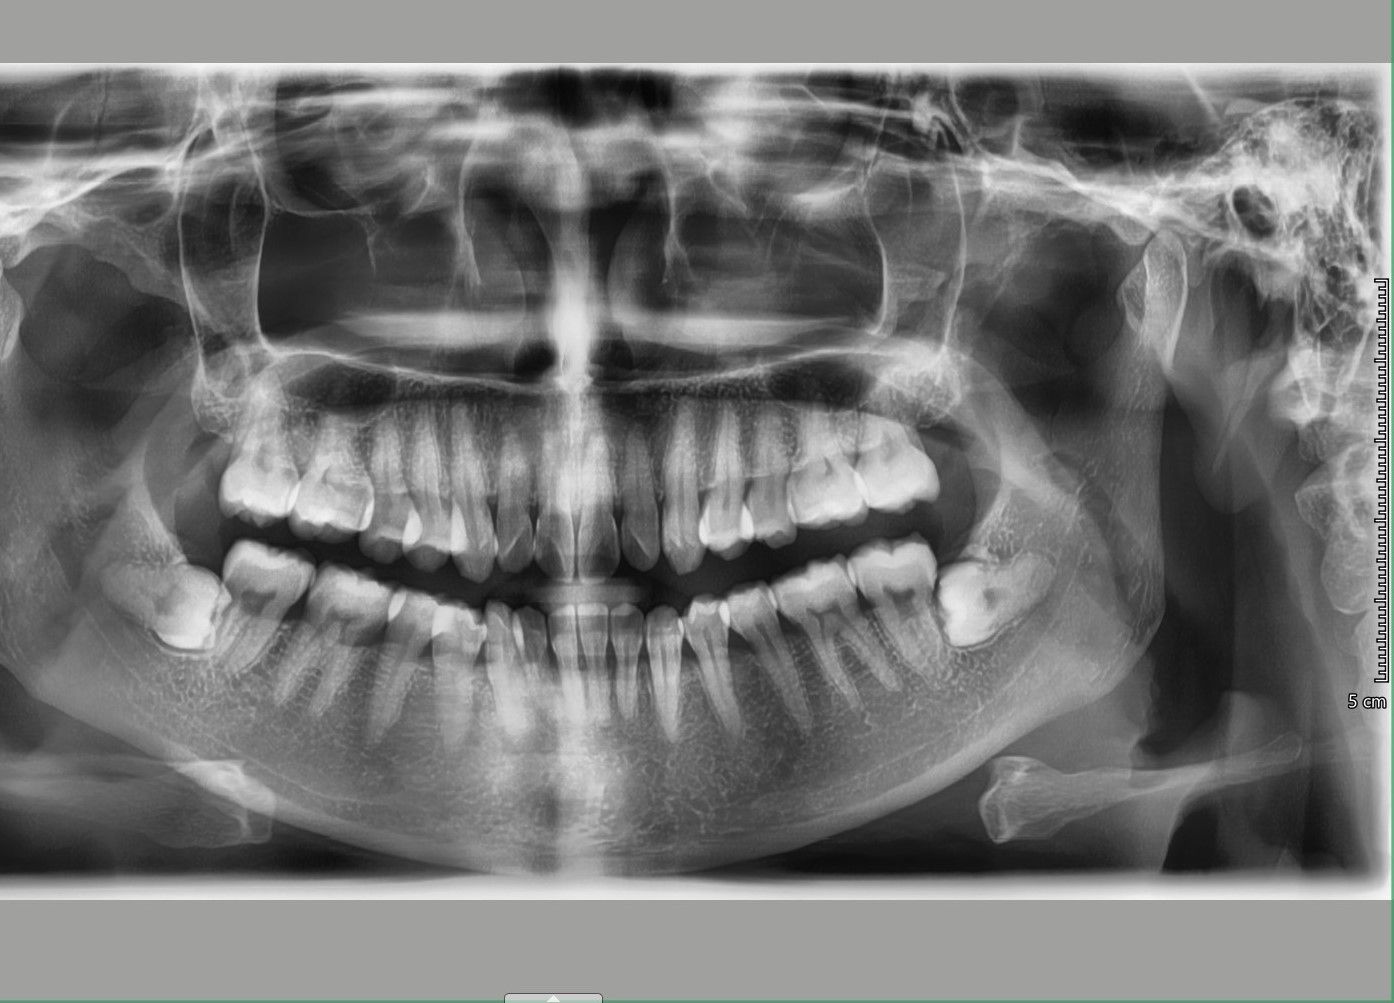 Nên niềng mắc cài hay invisalign cho tình trạng răng khấp khểnh vùng răng cửa, hô ở mức trung bình